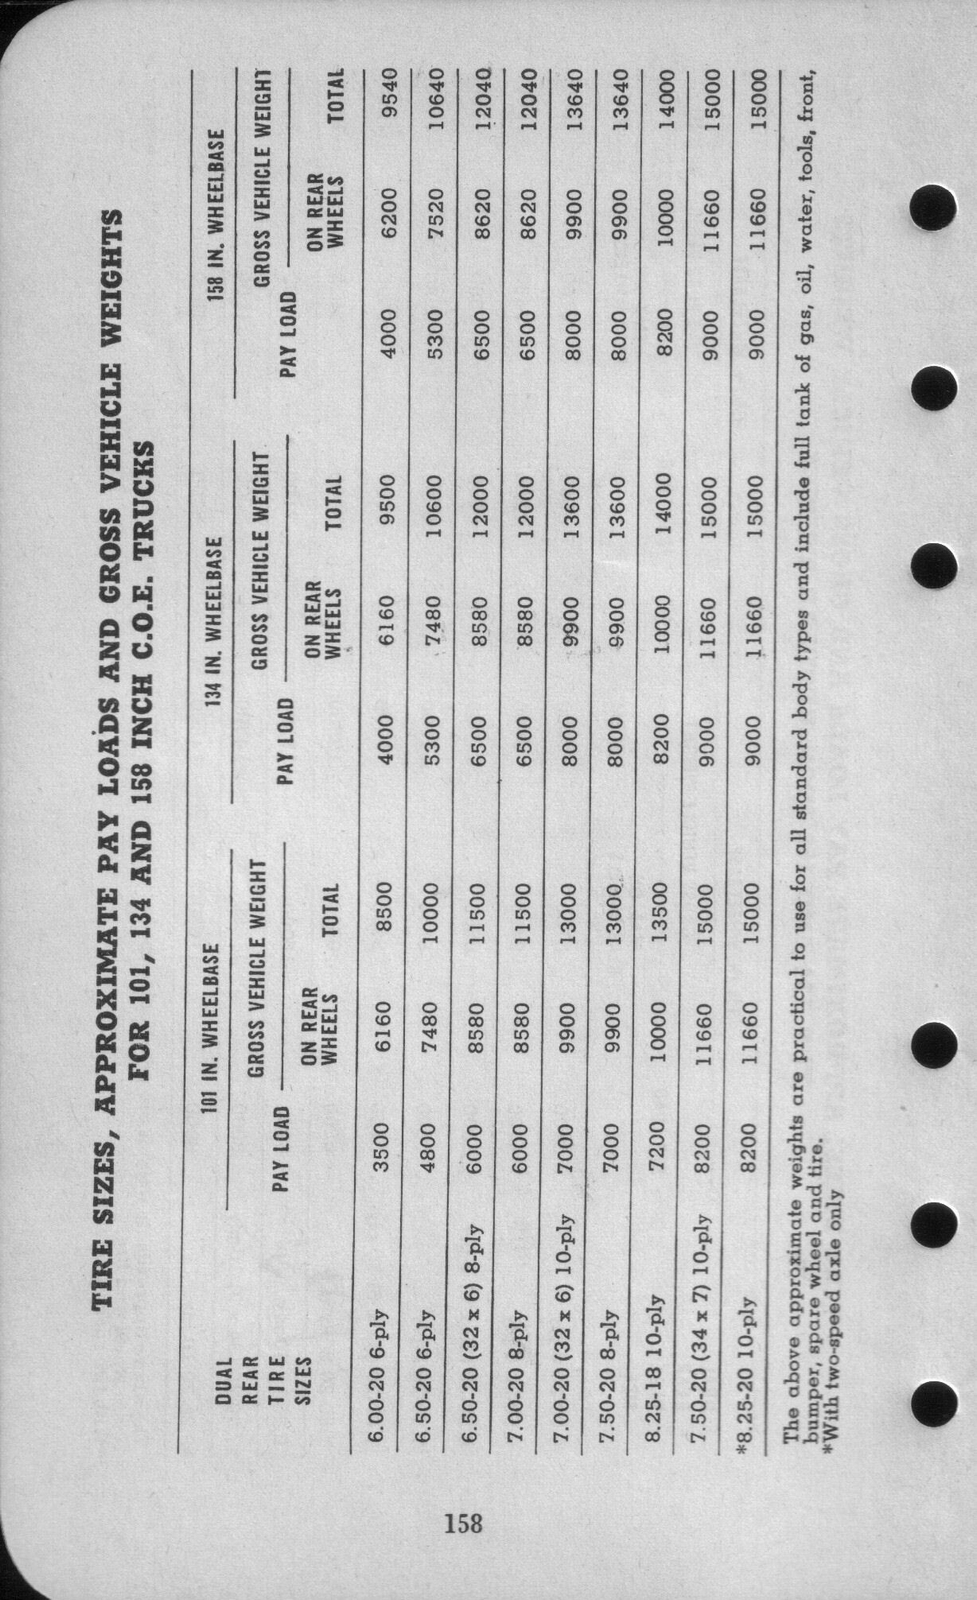 n_1942 Ford Salesmans Reference Manual-158.jpg